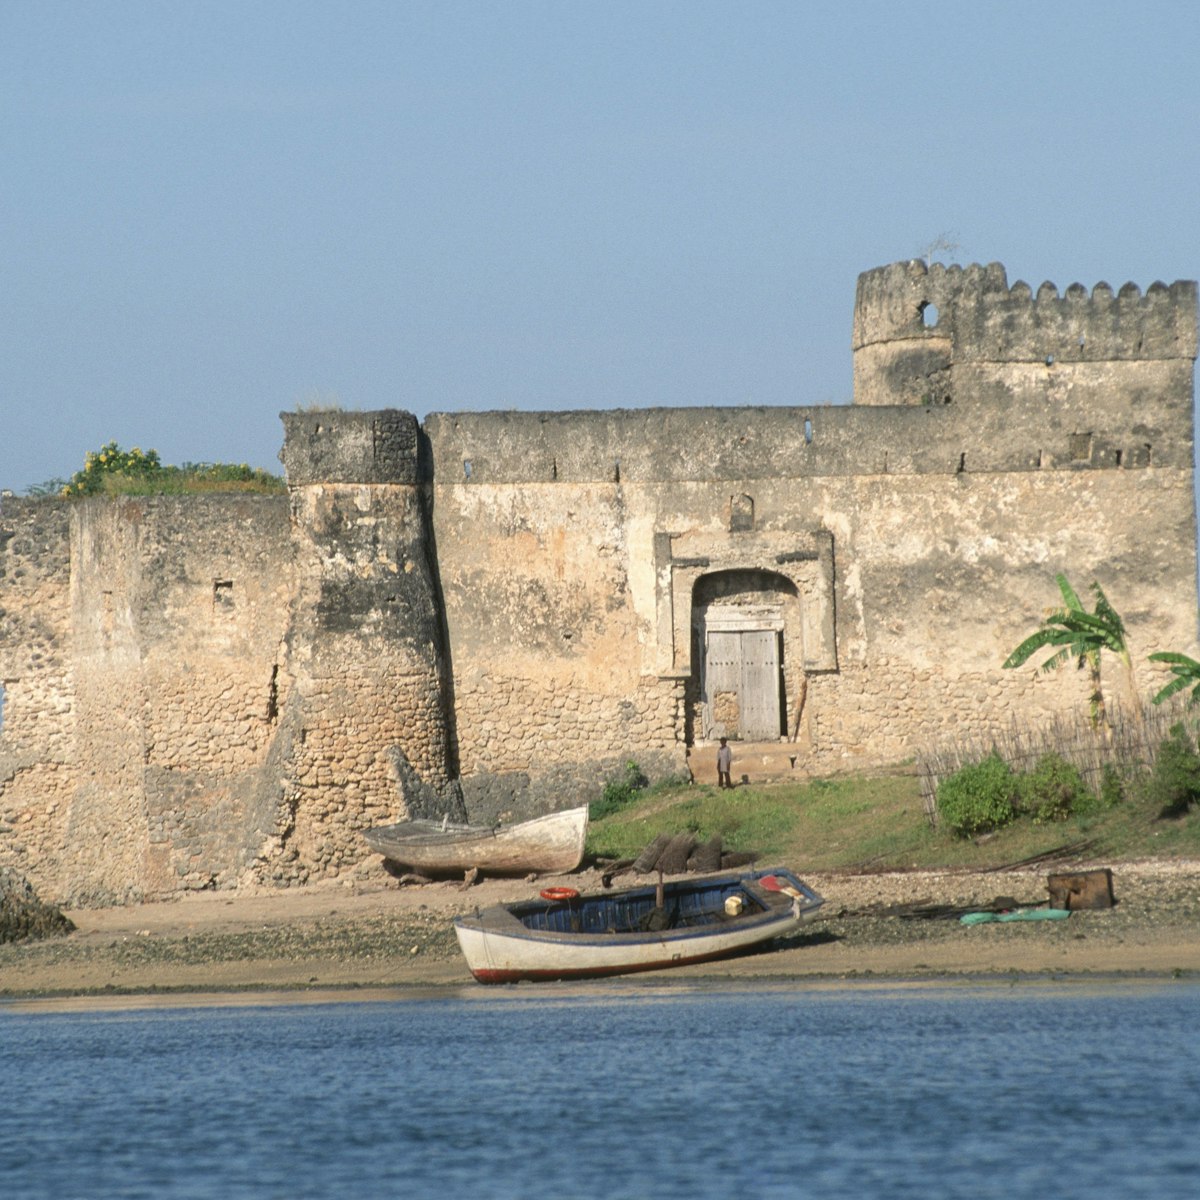 Gerezani Fort, Kilwa Kisiwani.
